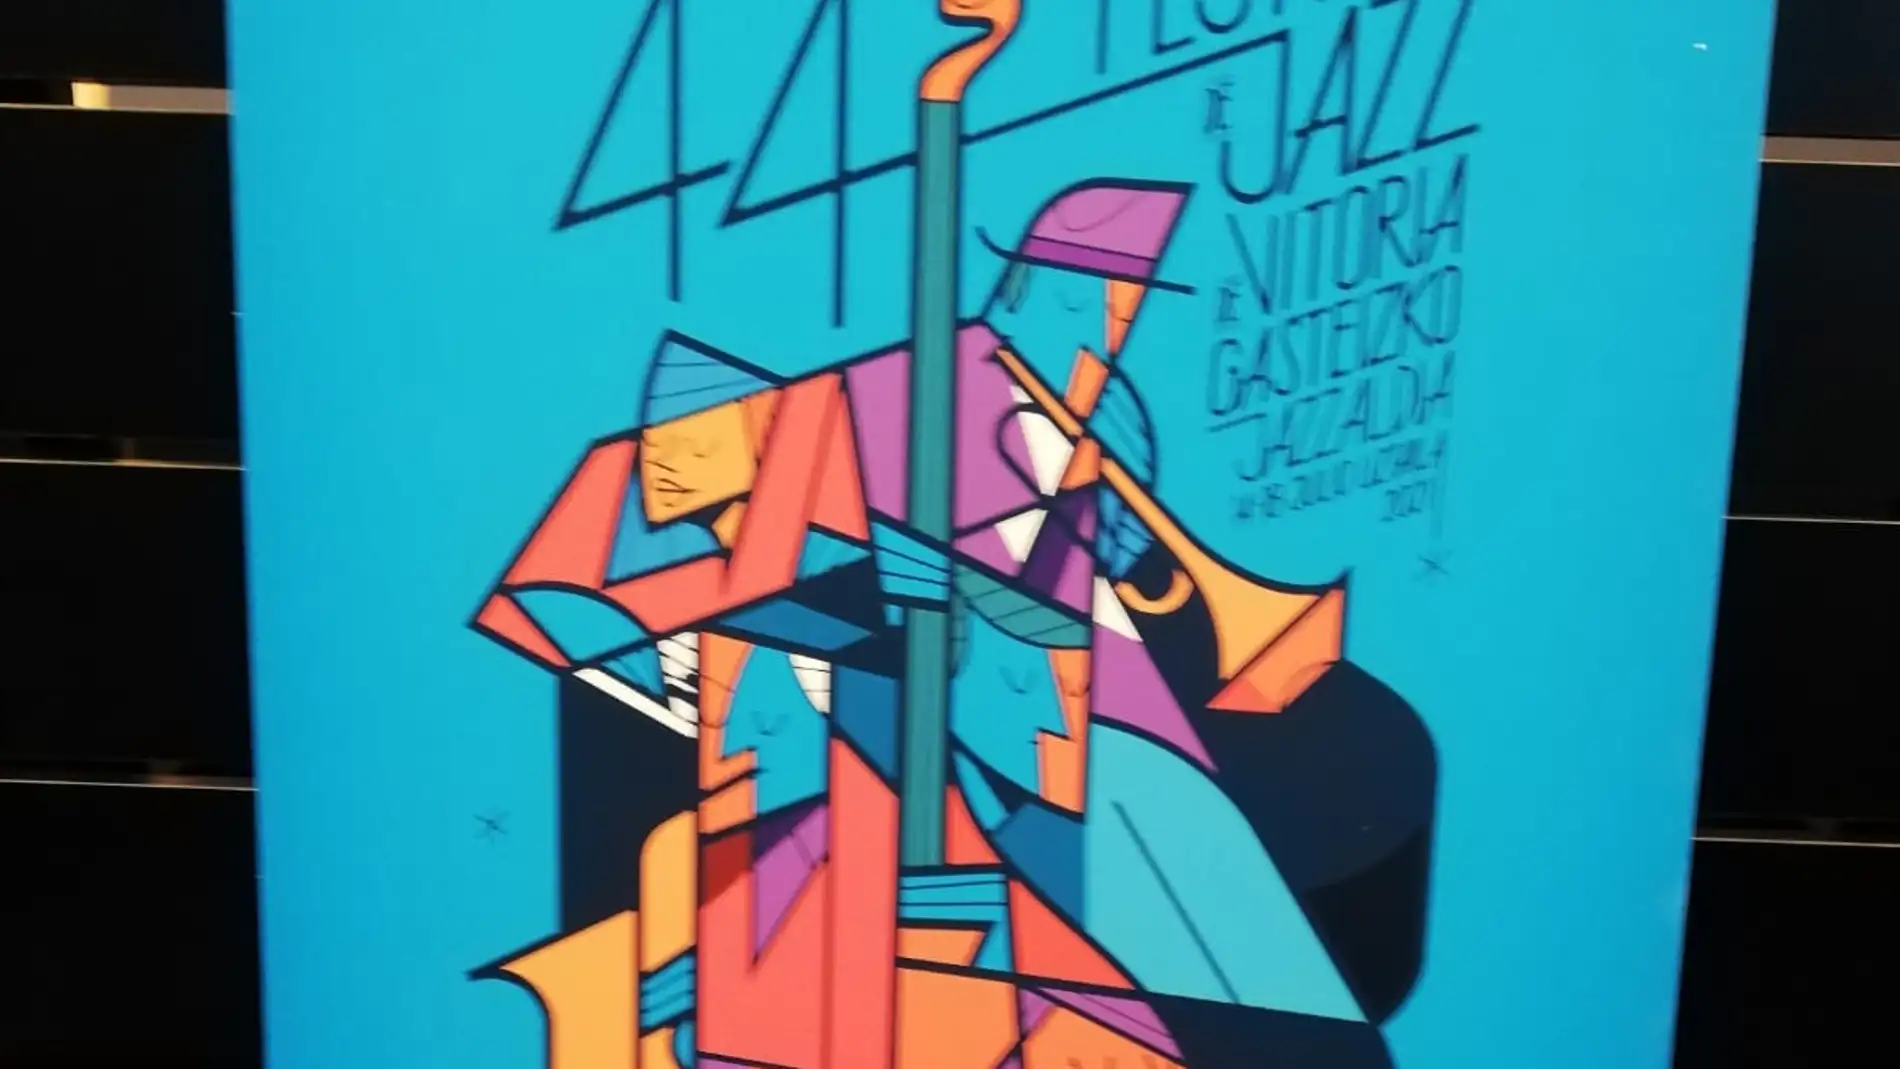 18 conciertos completan la programación del Festival de Jazz de Vitoria-Gasteiz